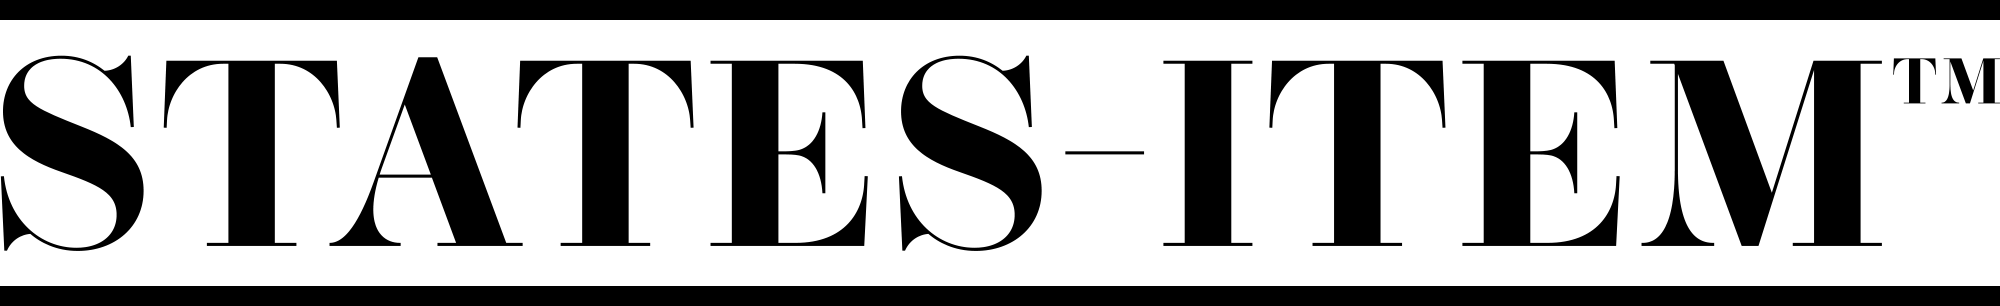 states item logo